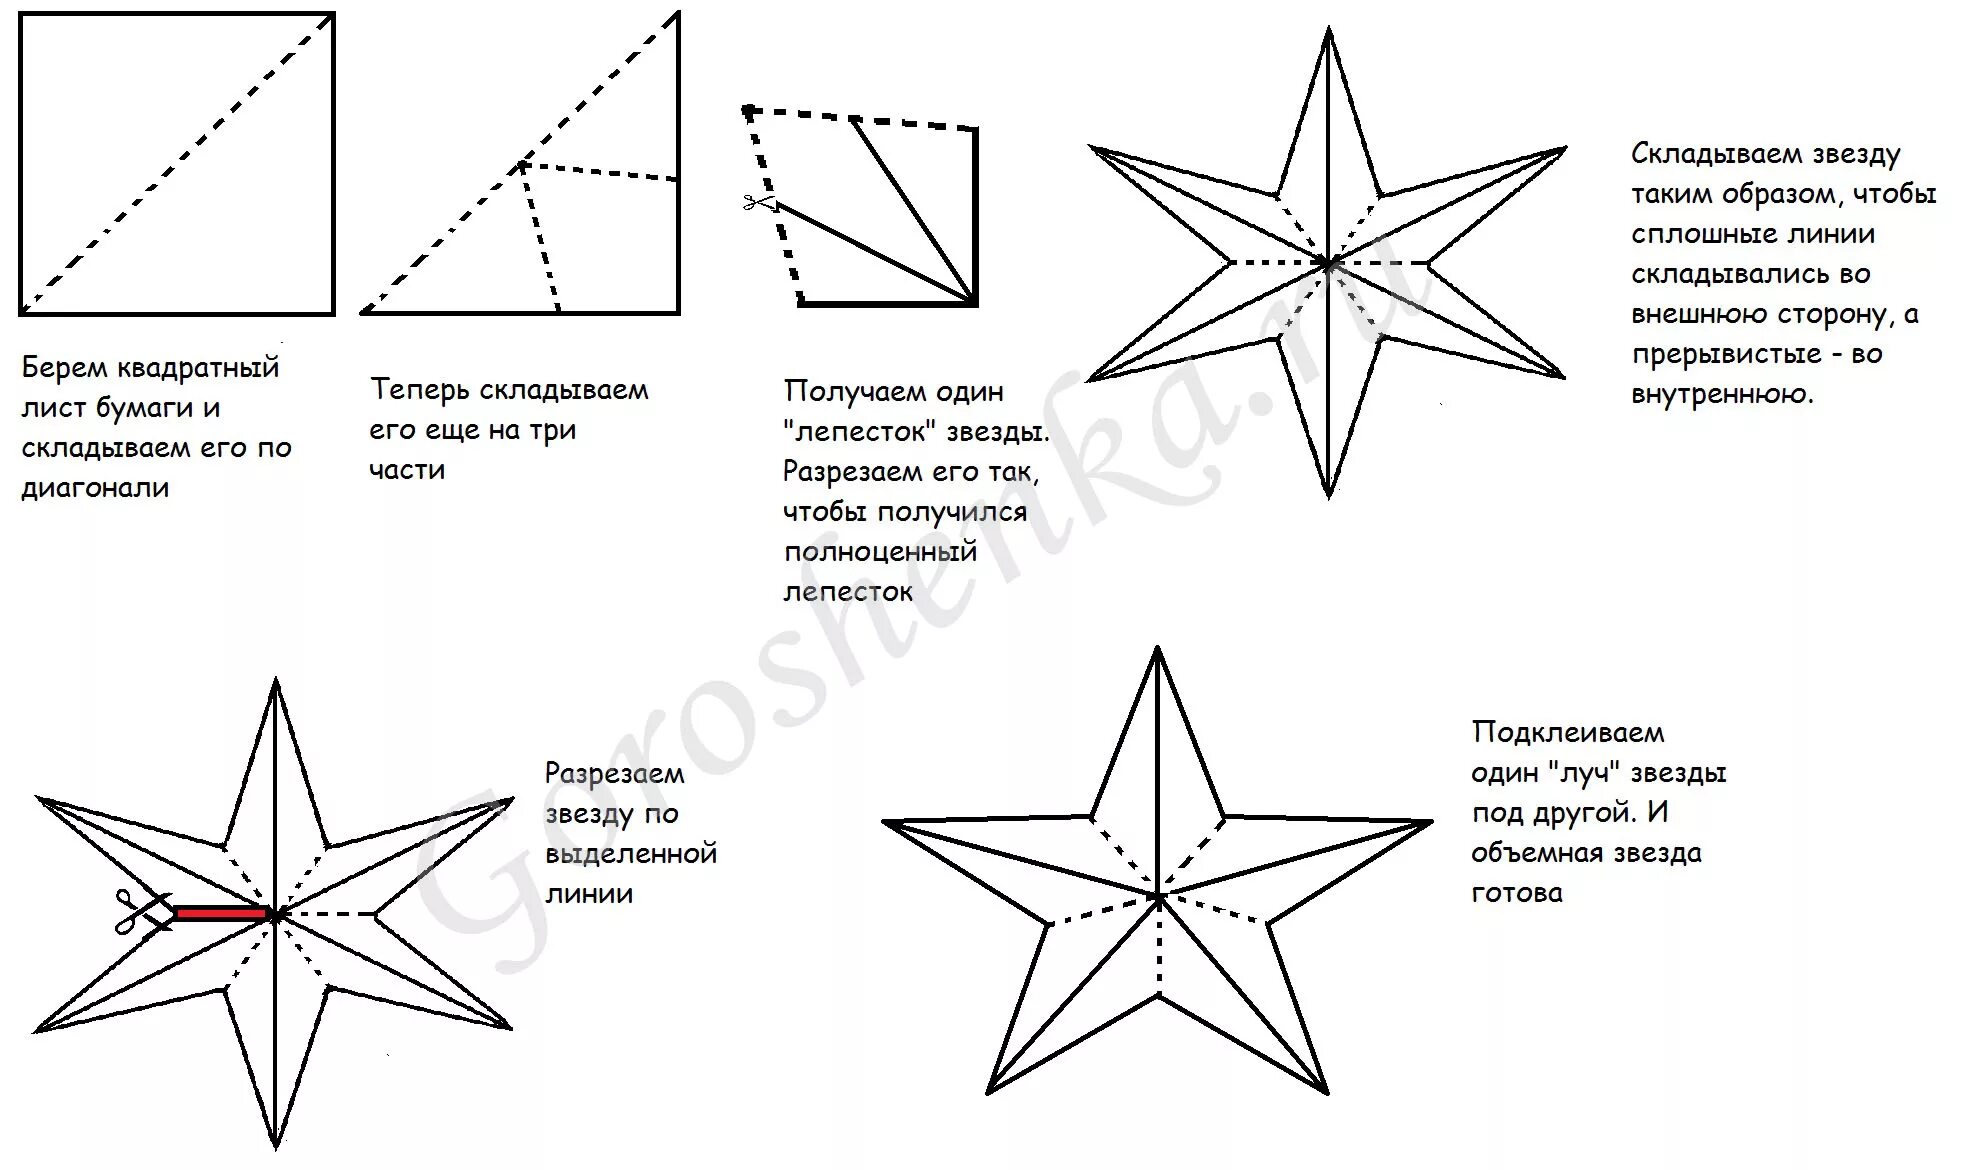 Сделать звезду из бумаги на 9. Объемная пятиконечная звезда из бумаги. Как сделать звезду из бумаги объемную схема поэтапно. Четырехконечная звезда из бумаги объемная схема. Оригами из бумаги звезда объемная пятиконечная схема.